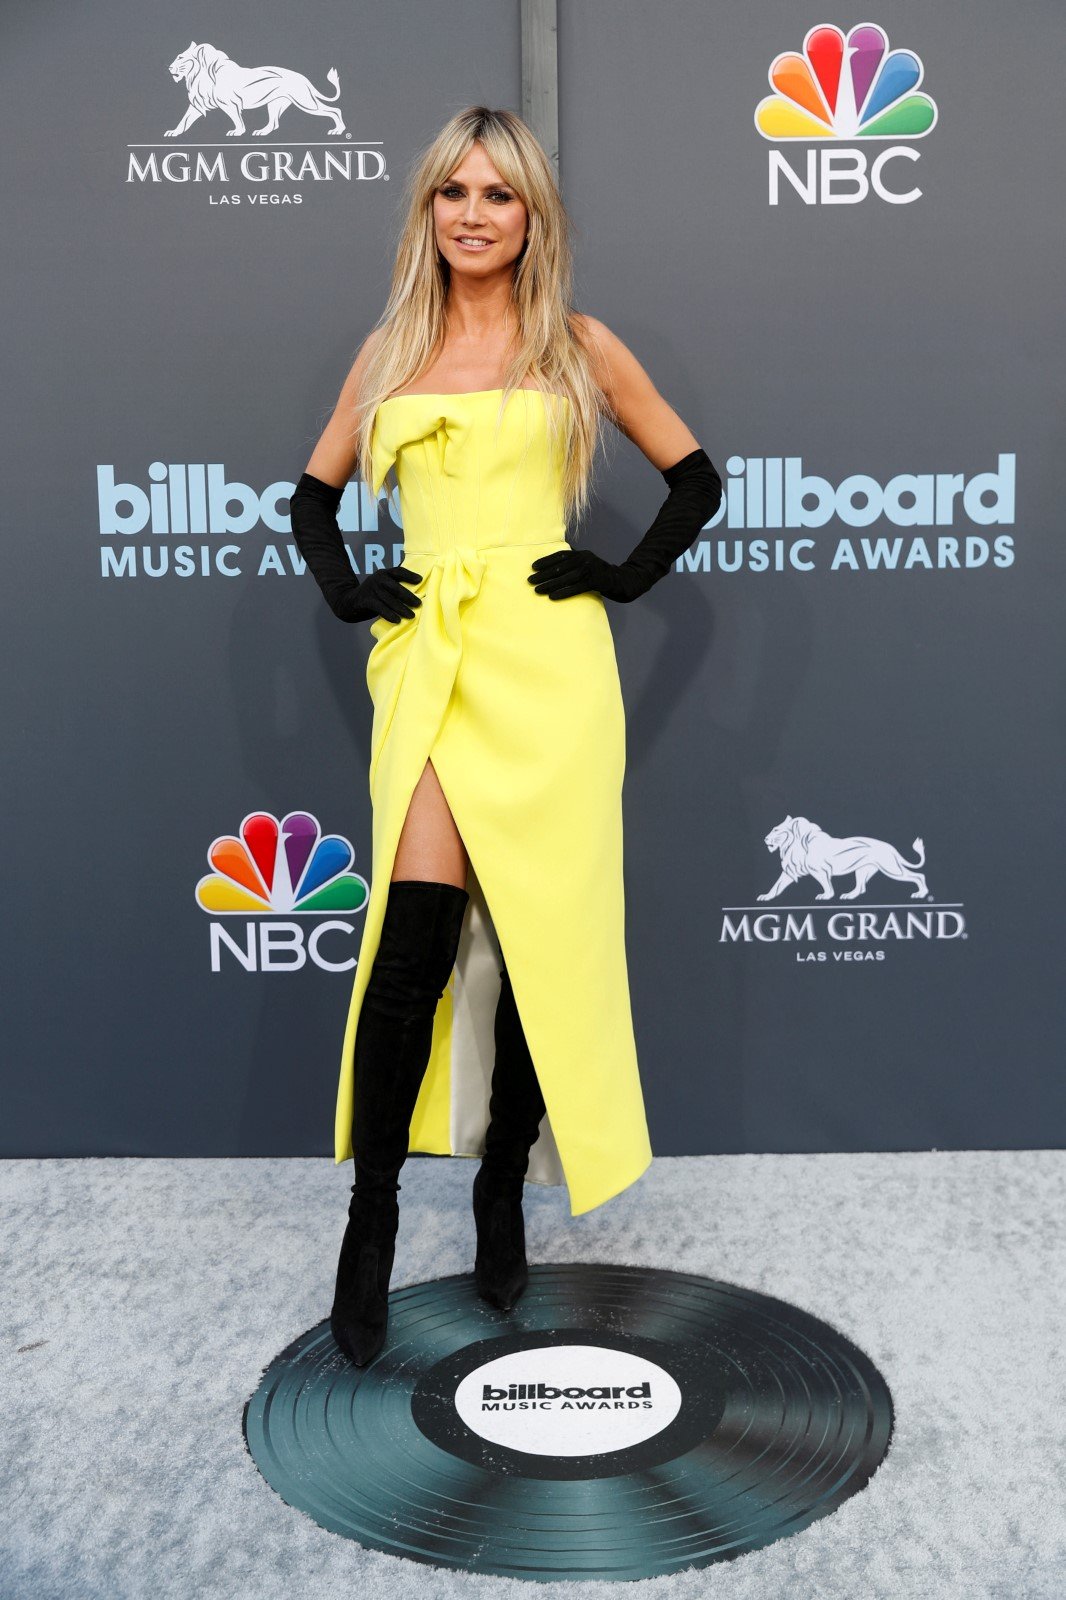 Předávání cen Billboard Music Awards 2022: Heidi Klum